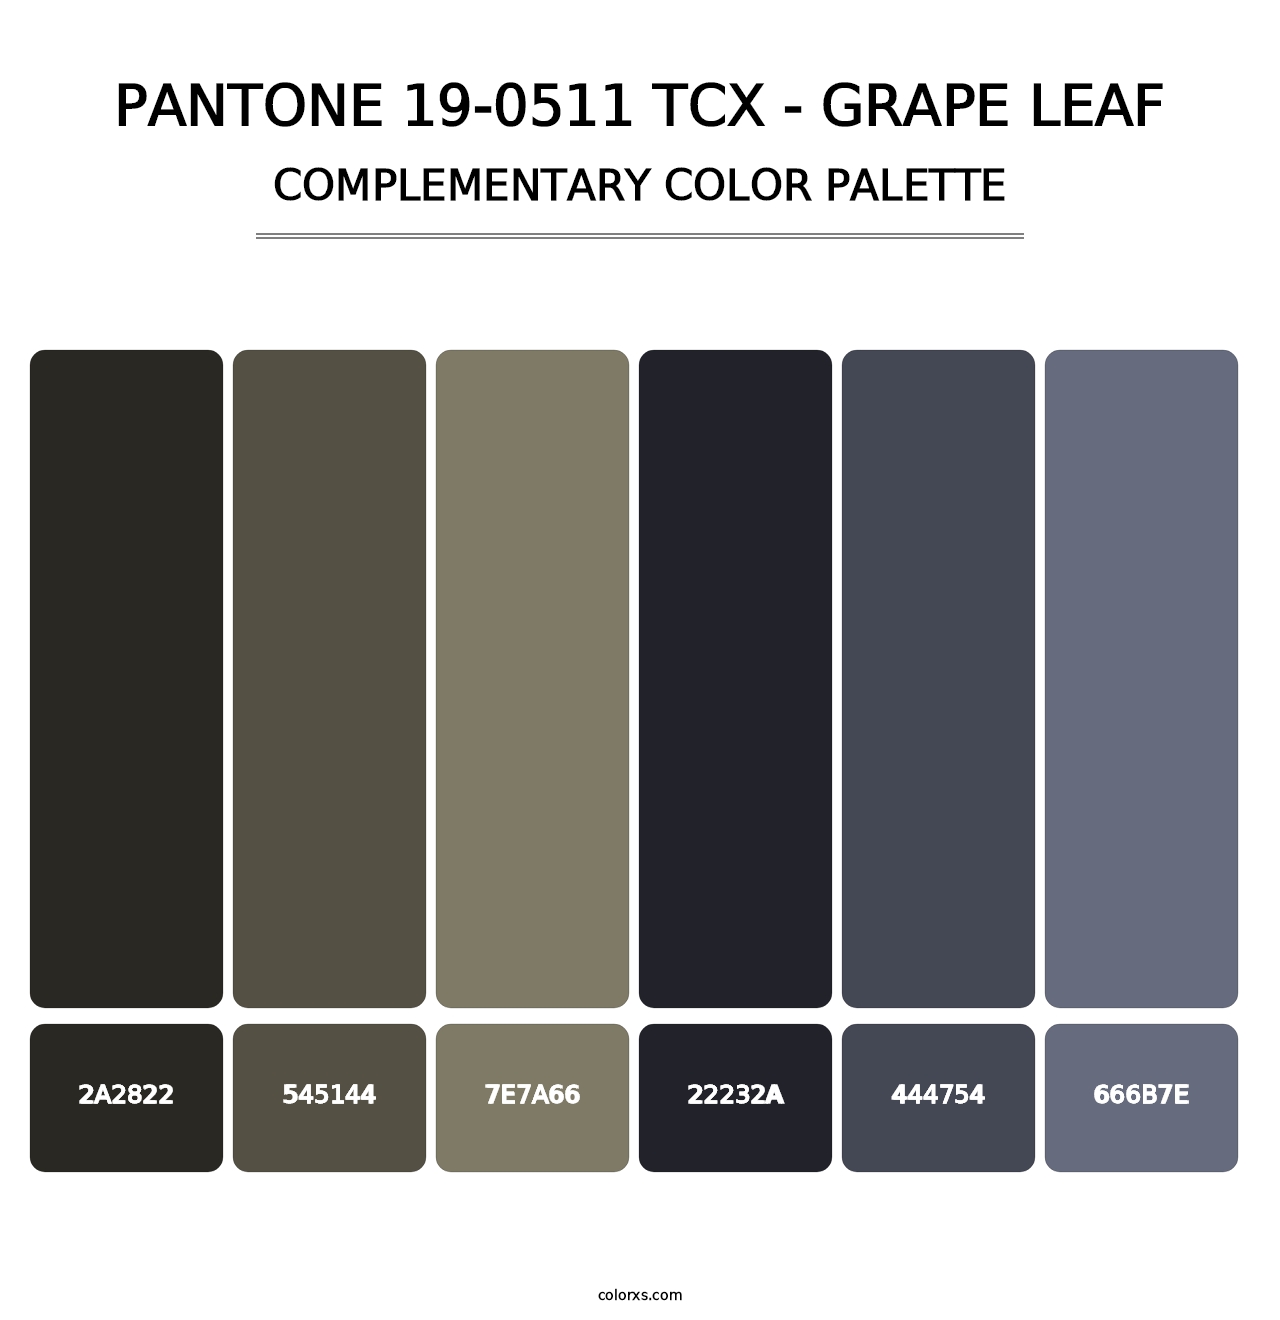 PANTONE 19-0511 TCX - Grape Leaf - Complementary Color Palette